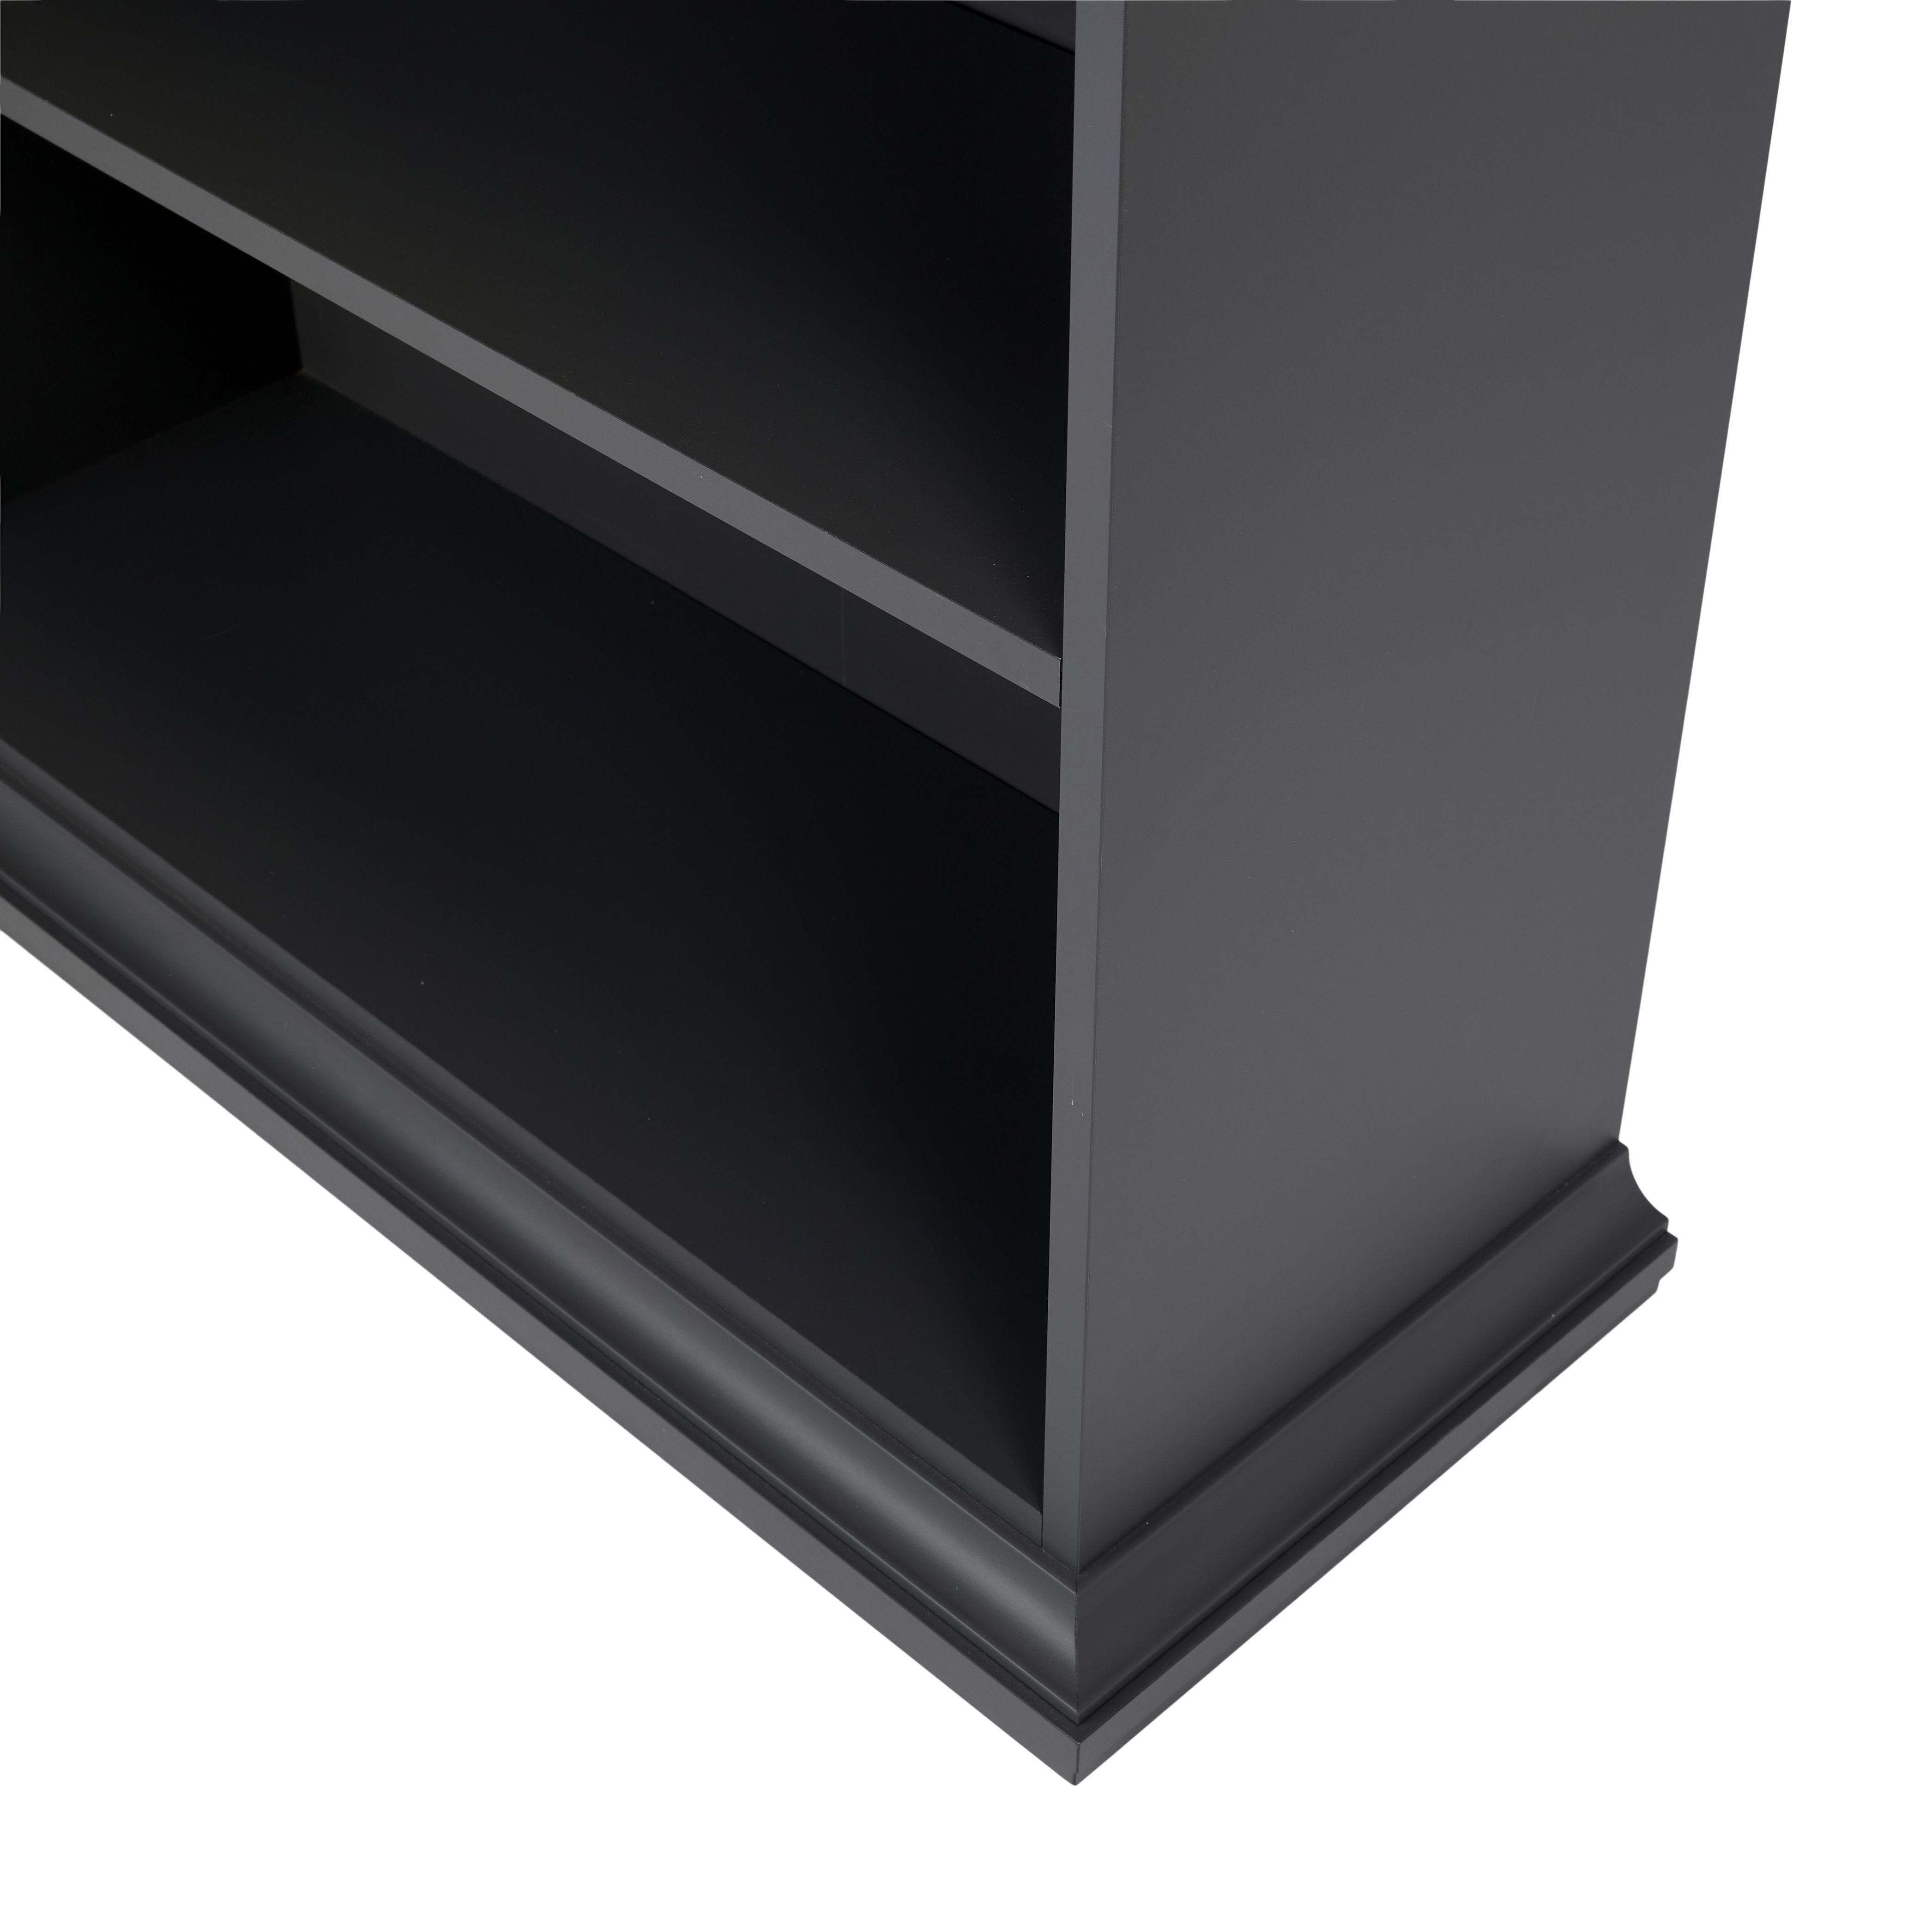 Paris Tall Grey Freestanding 5 shelf Rectangular Bookcase, (H)200mm (W)962mm